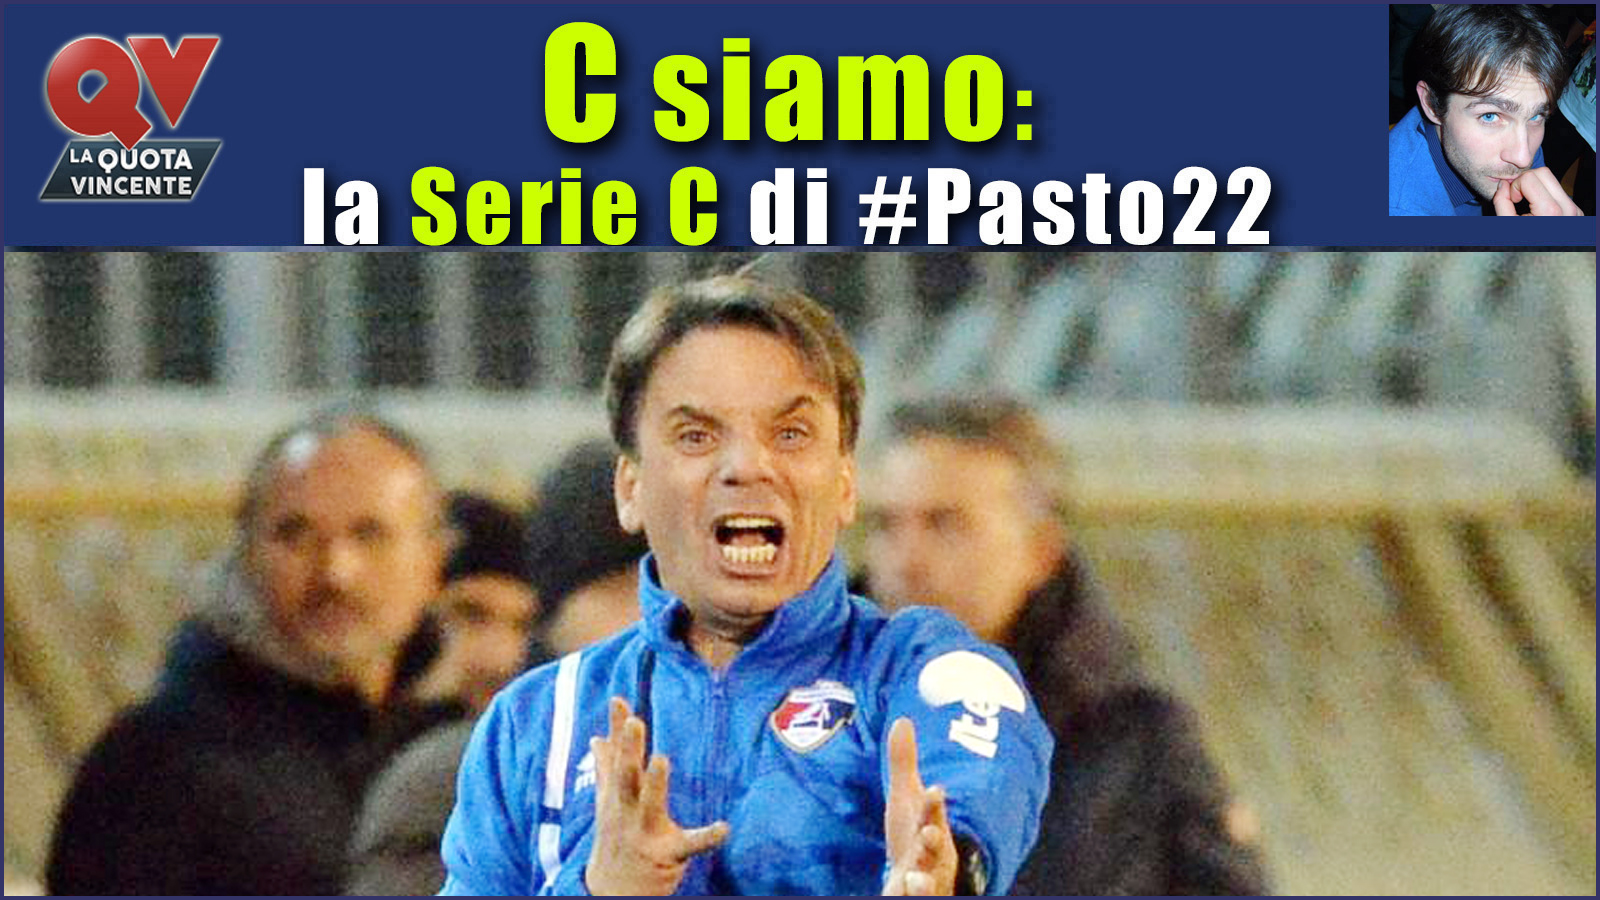 Pronostici Serie C sabato 20 gennaio: #Csiamo, il blog di #Pasto22